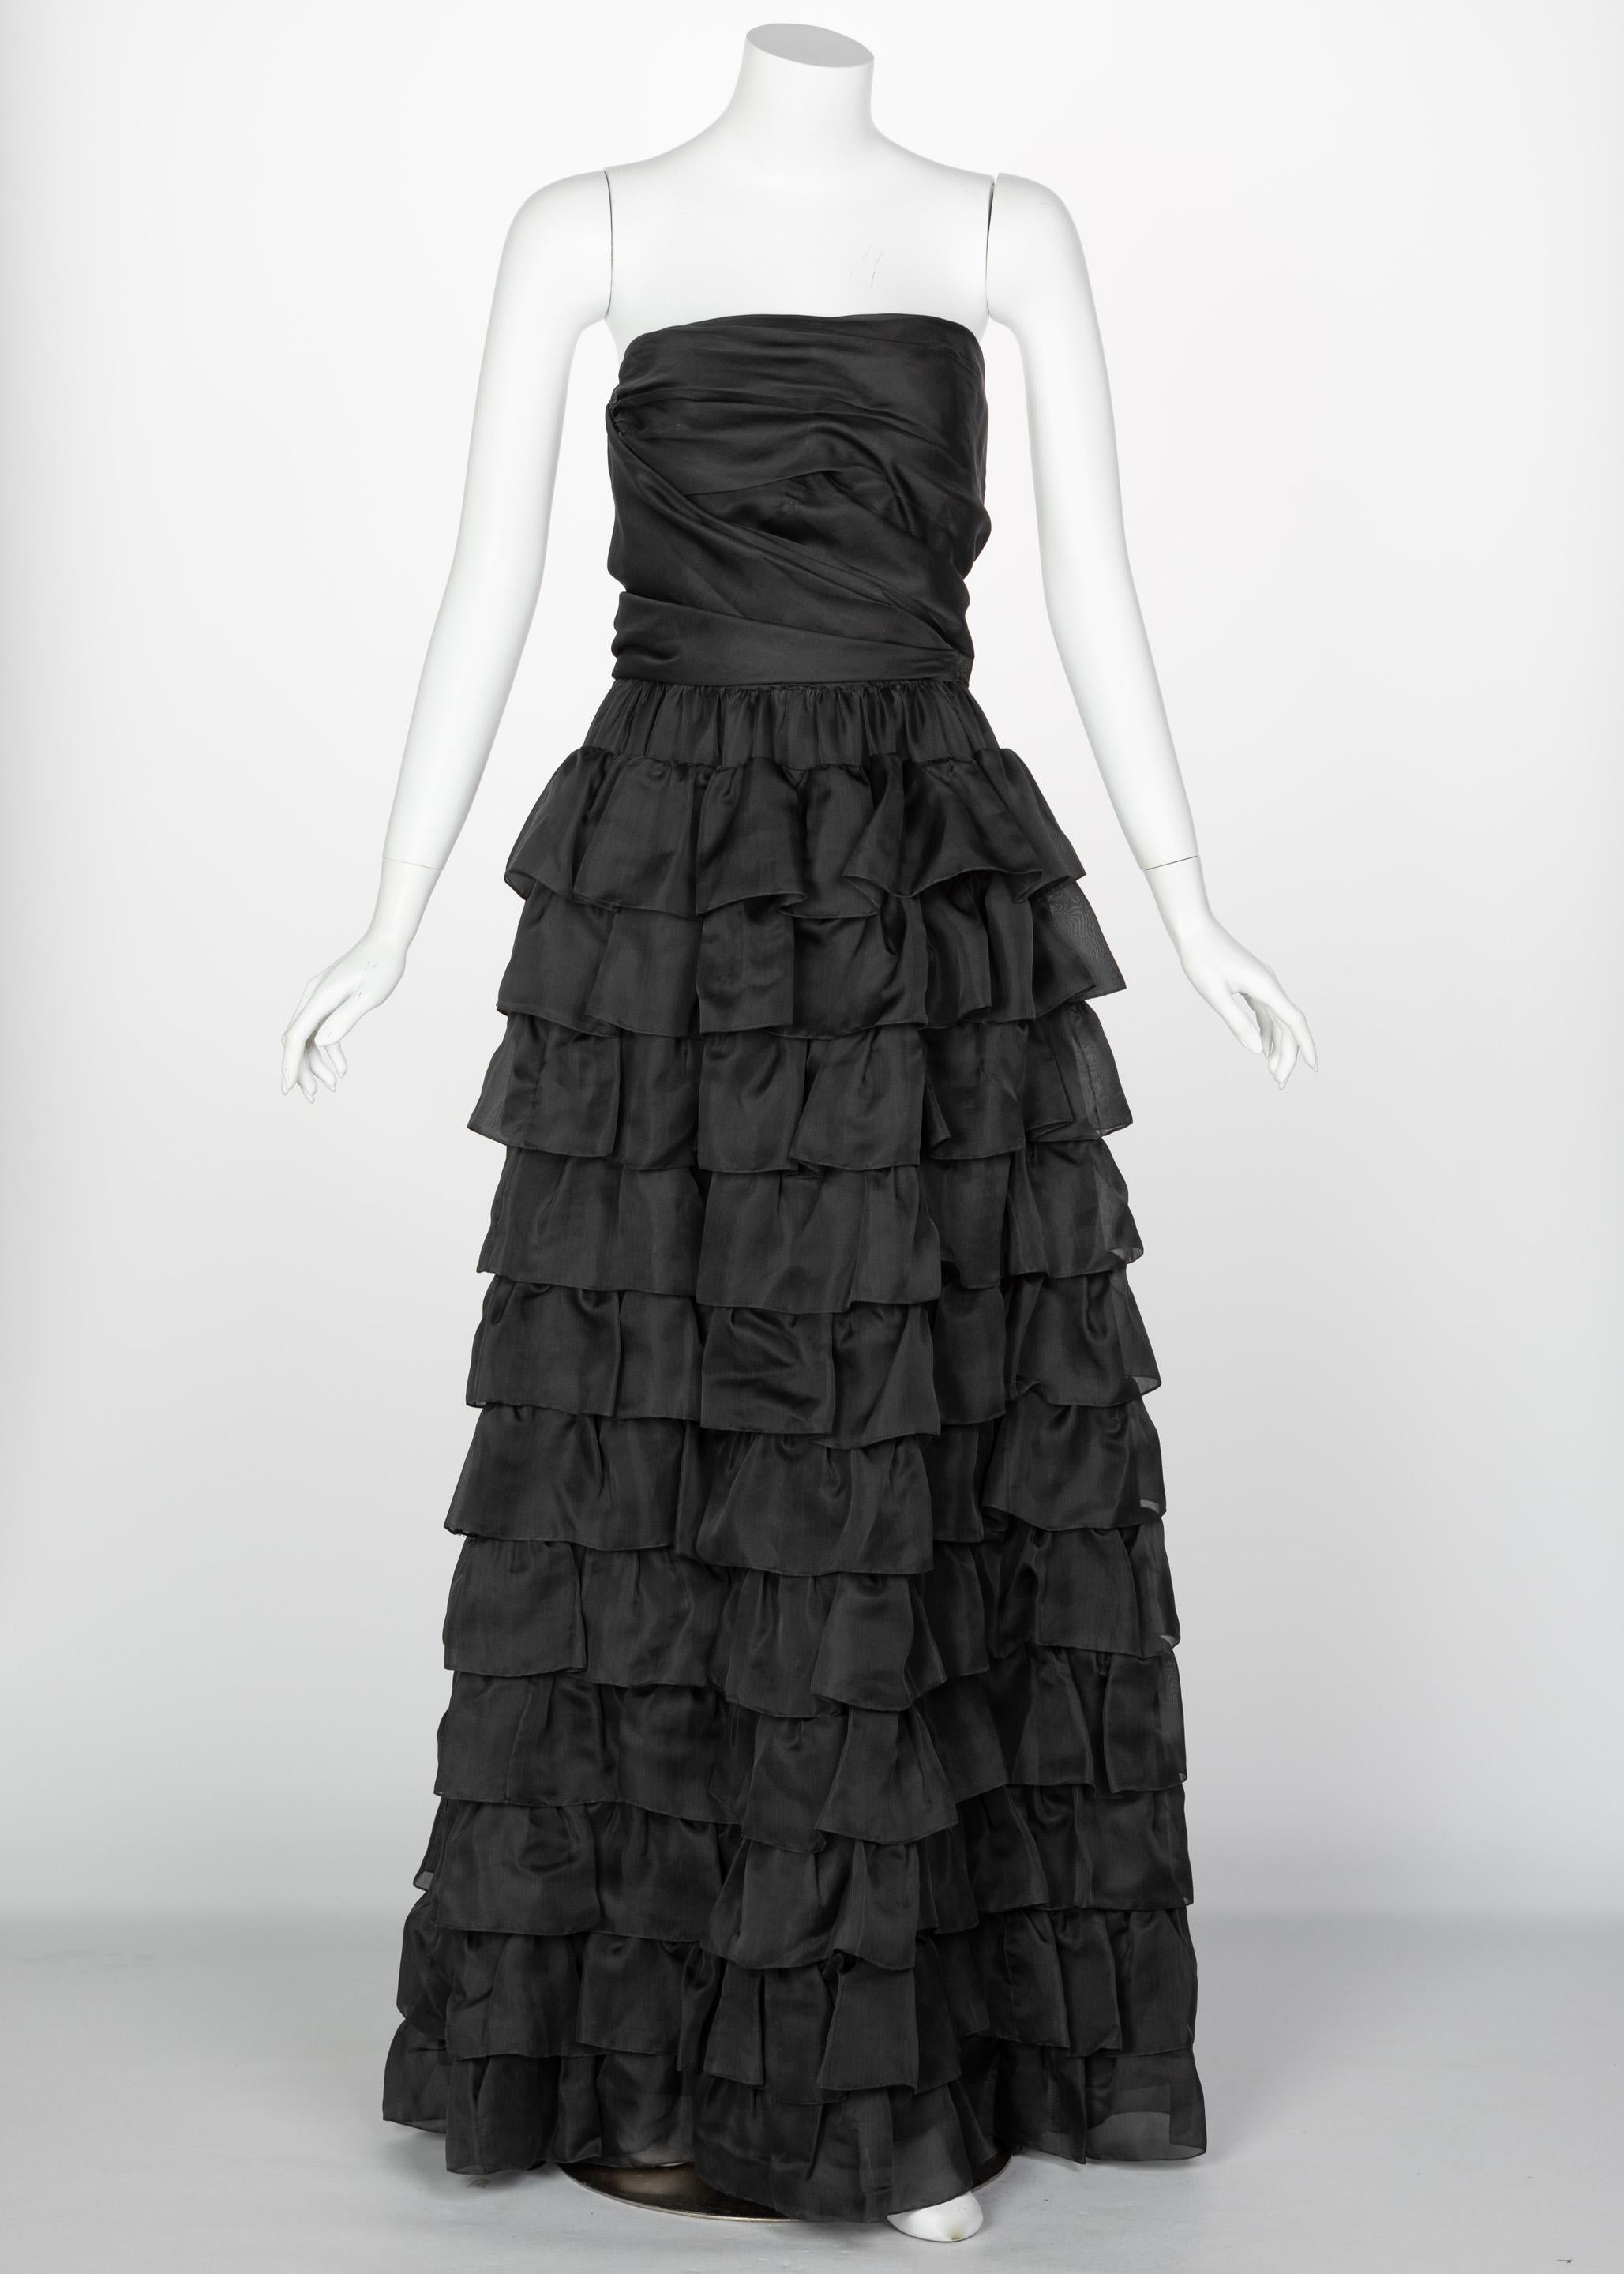 Fondée en 1952, la maison Givenchy s'est imposée comme l'une des maisons de couture par excellence, associée à l'art dramatique et à l'opulence de la haute couture. En plus d'être le créateur préféré de l'icône Audrey Hepburn, Hubert de Givenchy est